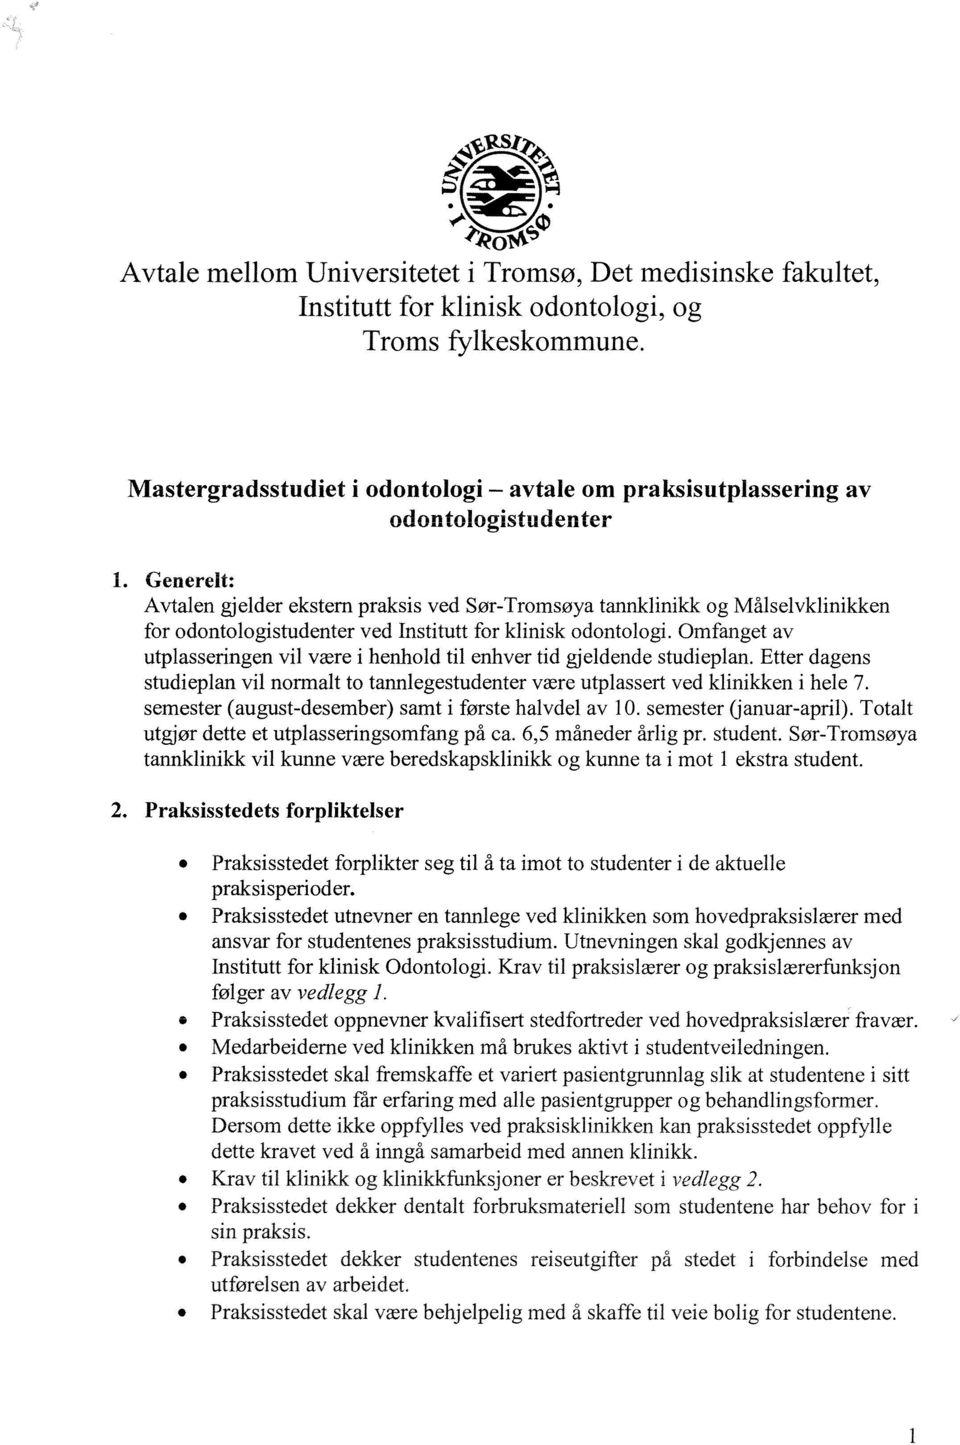 Generelt: Avtalen gjelder ekstem praksis ved Sør-Tromsøya tannklinikk og Målselvklinikken for odontologistudenter ved Institutt for klinisk odontologi.